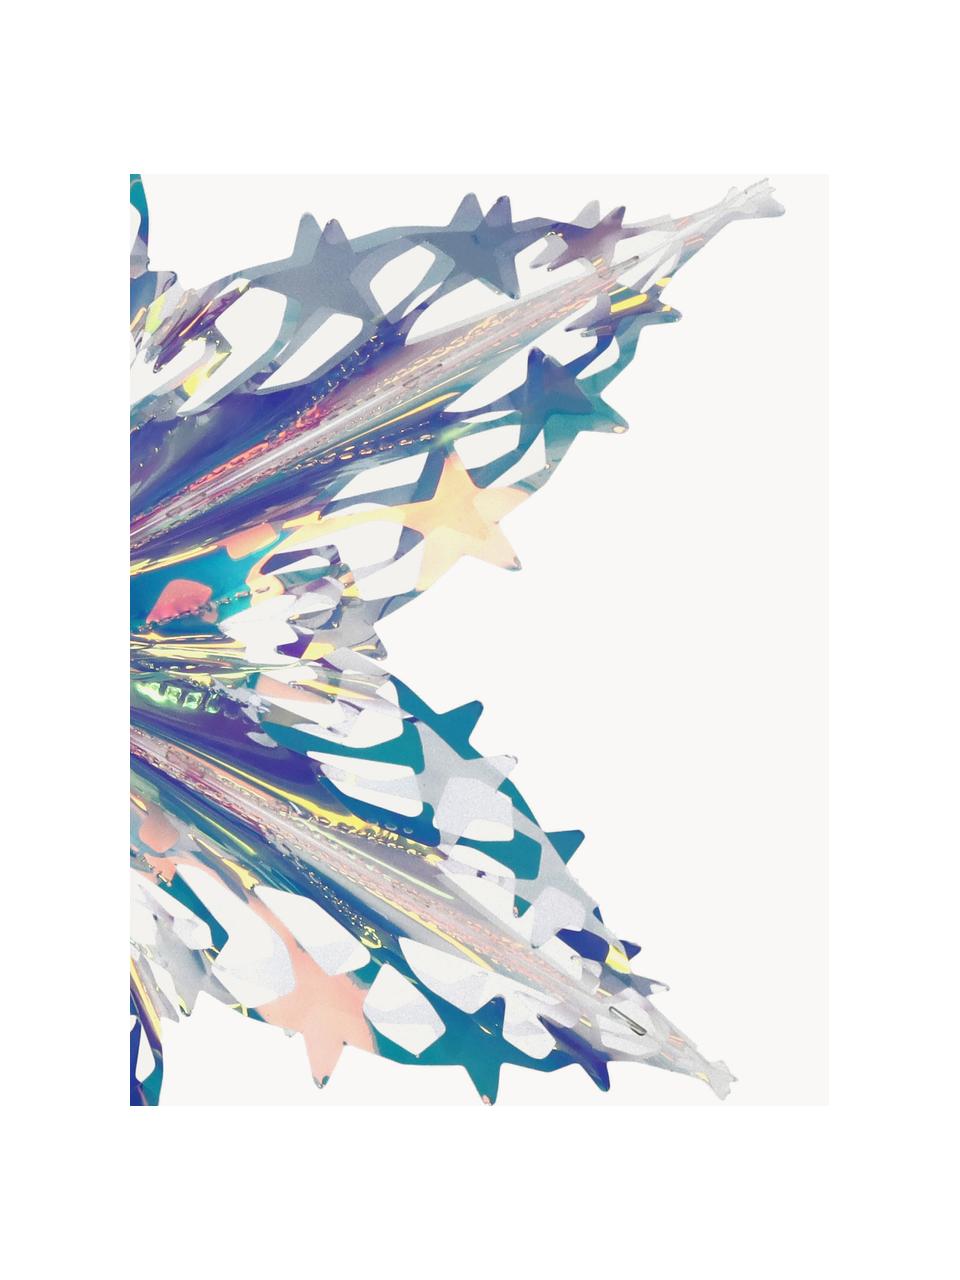 Décoration de sapin de Noël Iridescent, Plastique, Chrome, transparent, irisé, larg. 40 x haut. 40 cm